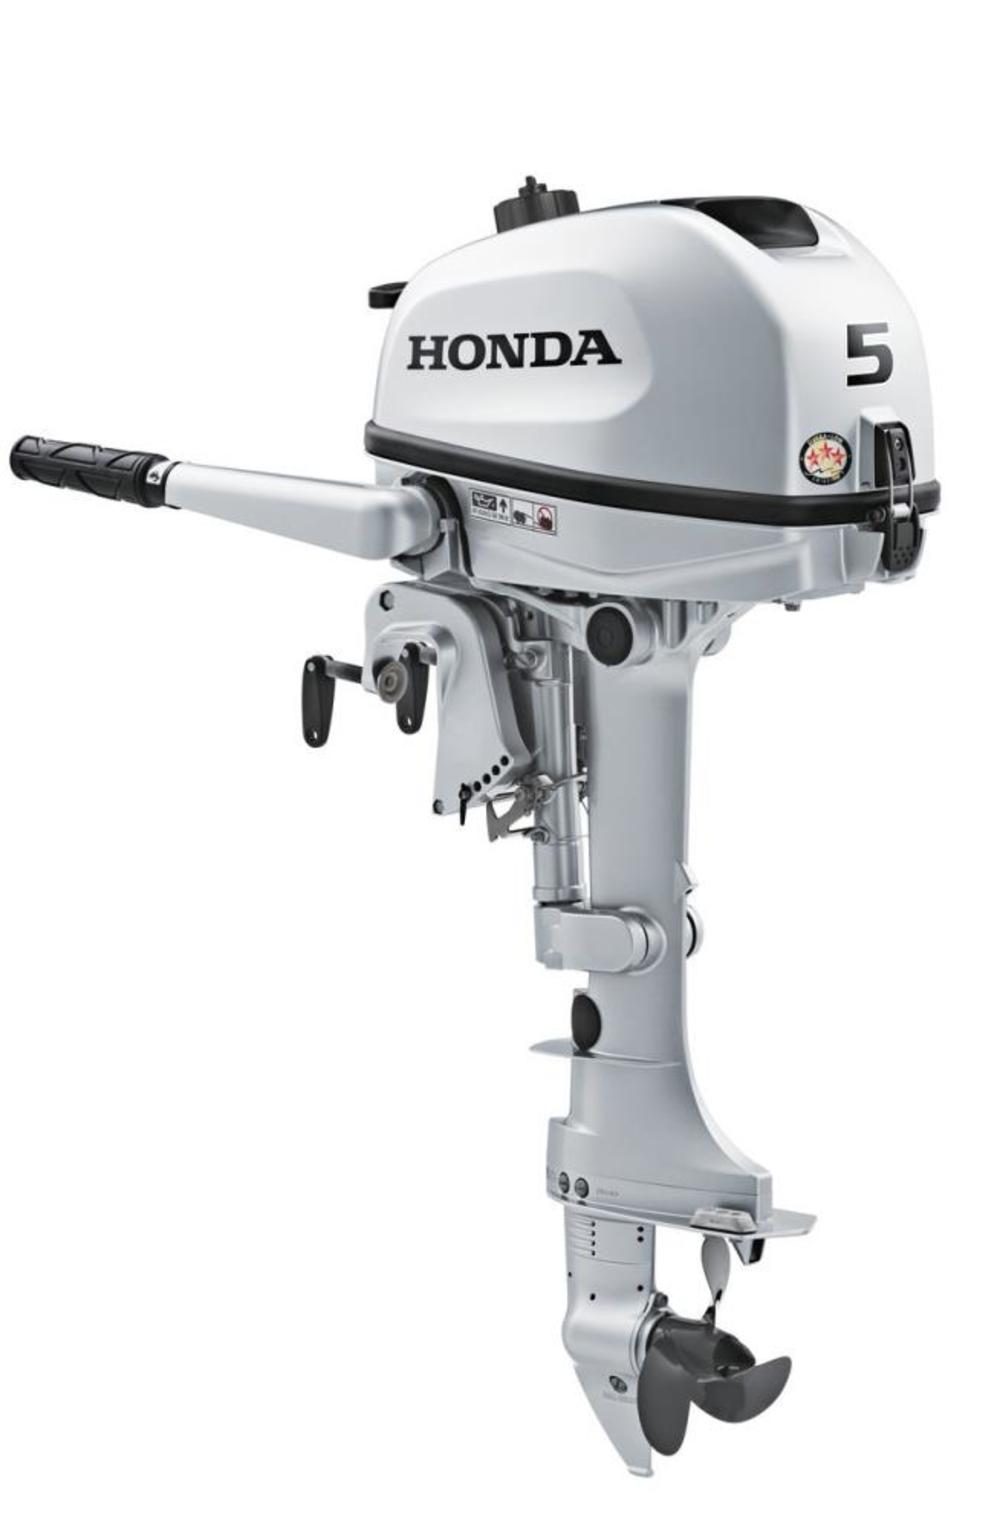 Honda Outboard Motor 5HP with Tiller Handle 20 Shaft